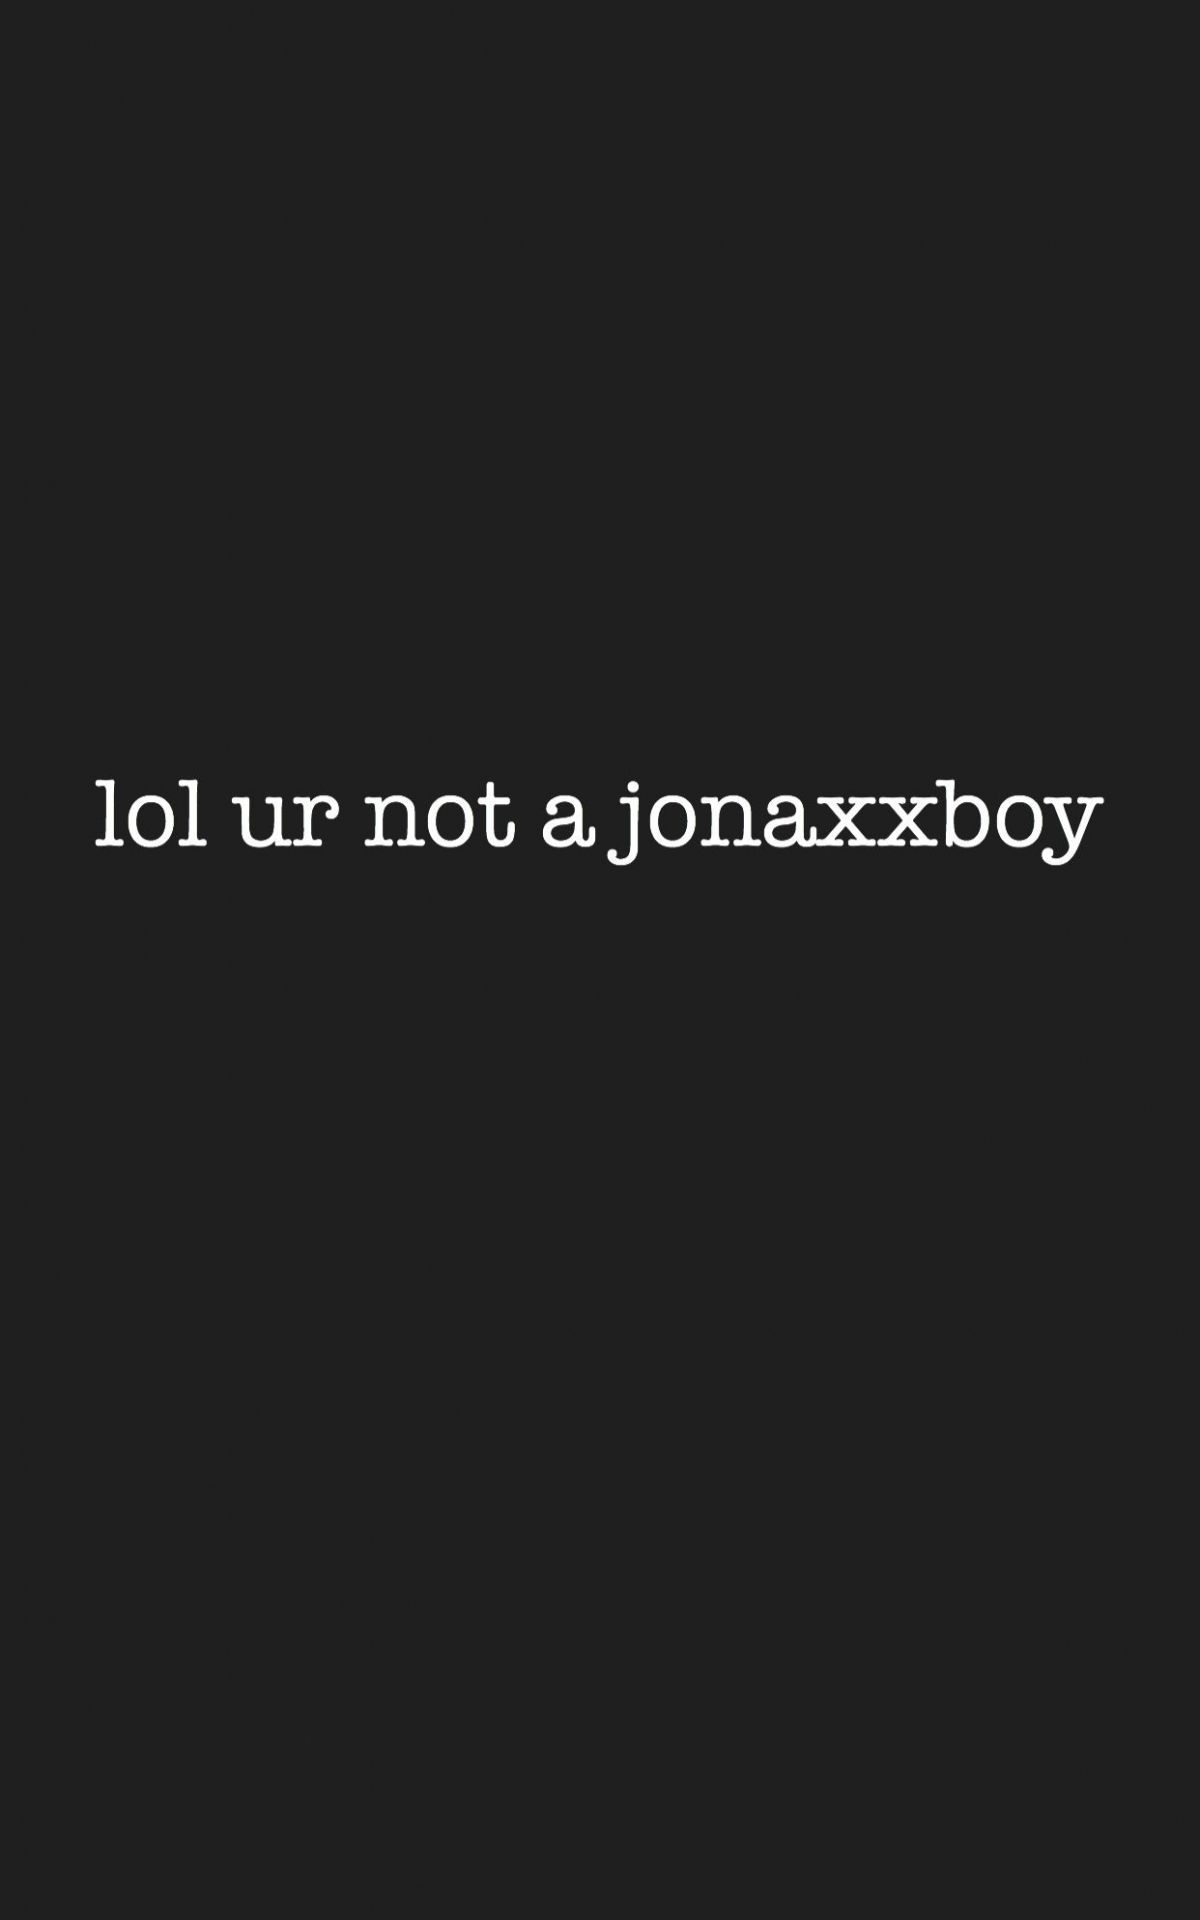 Free download lol ur not a jonaxxboy wallpaper wattpad jonaxxboy